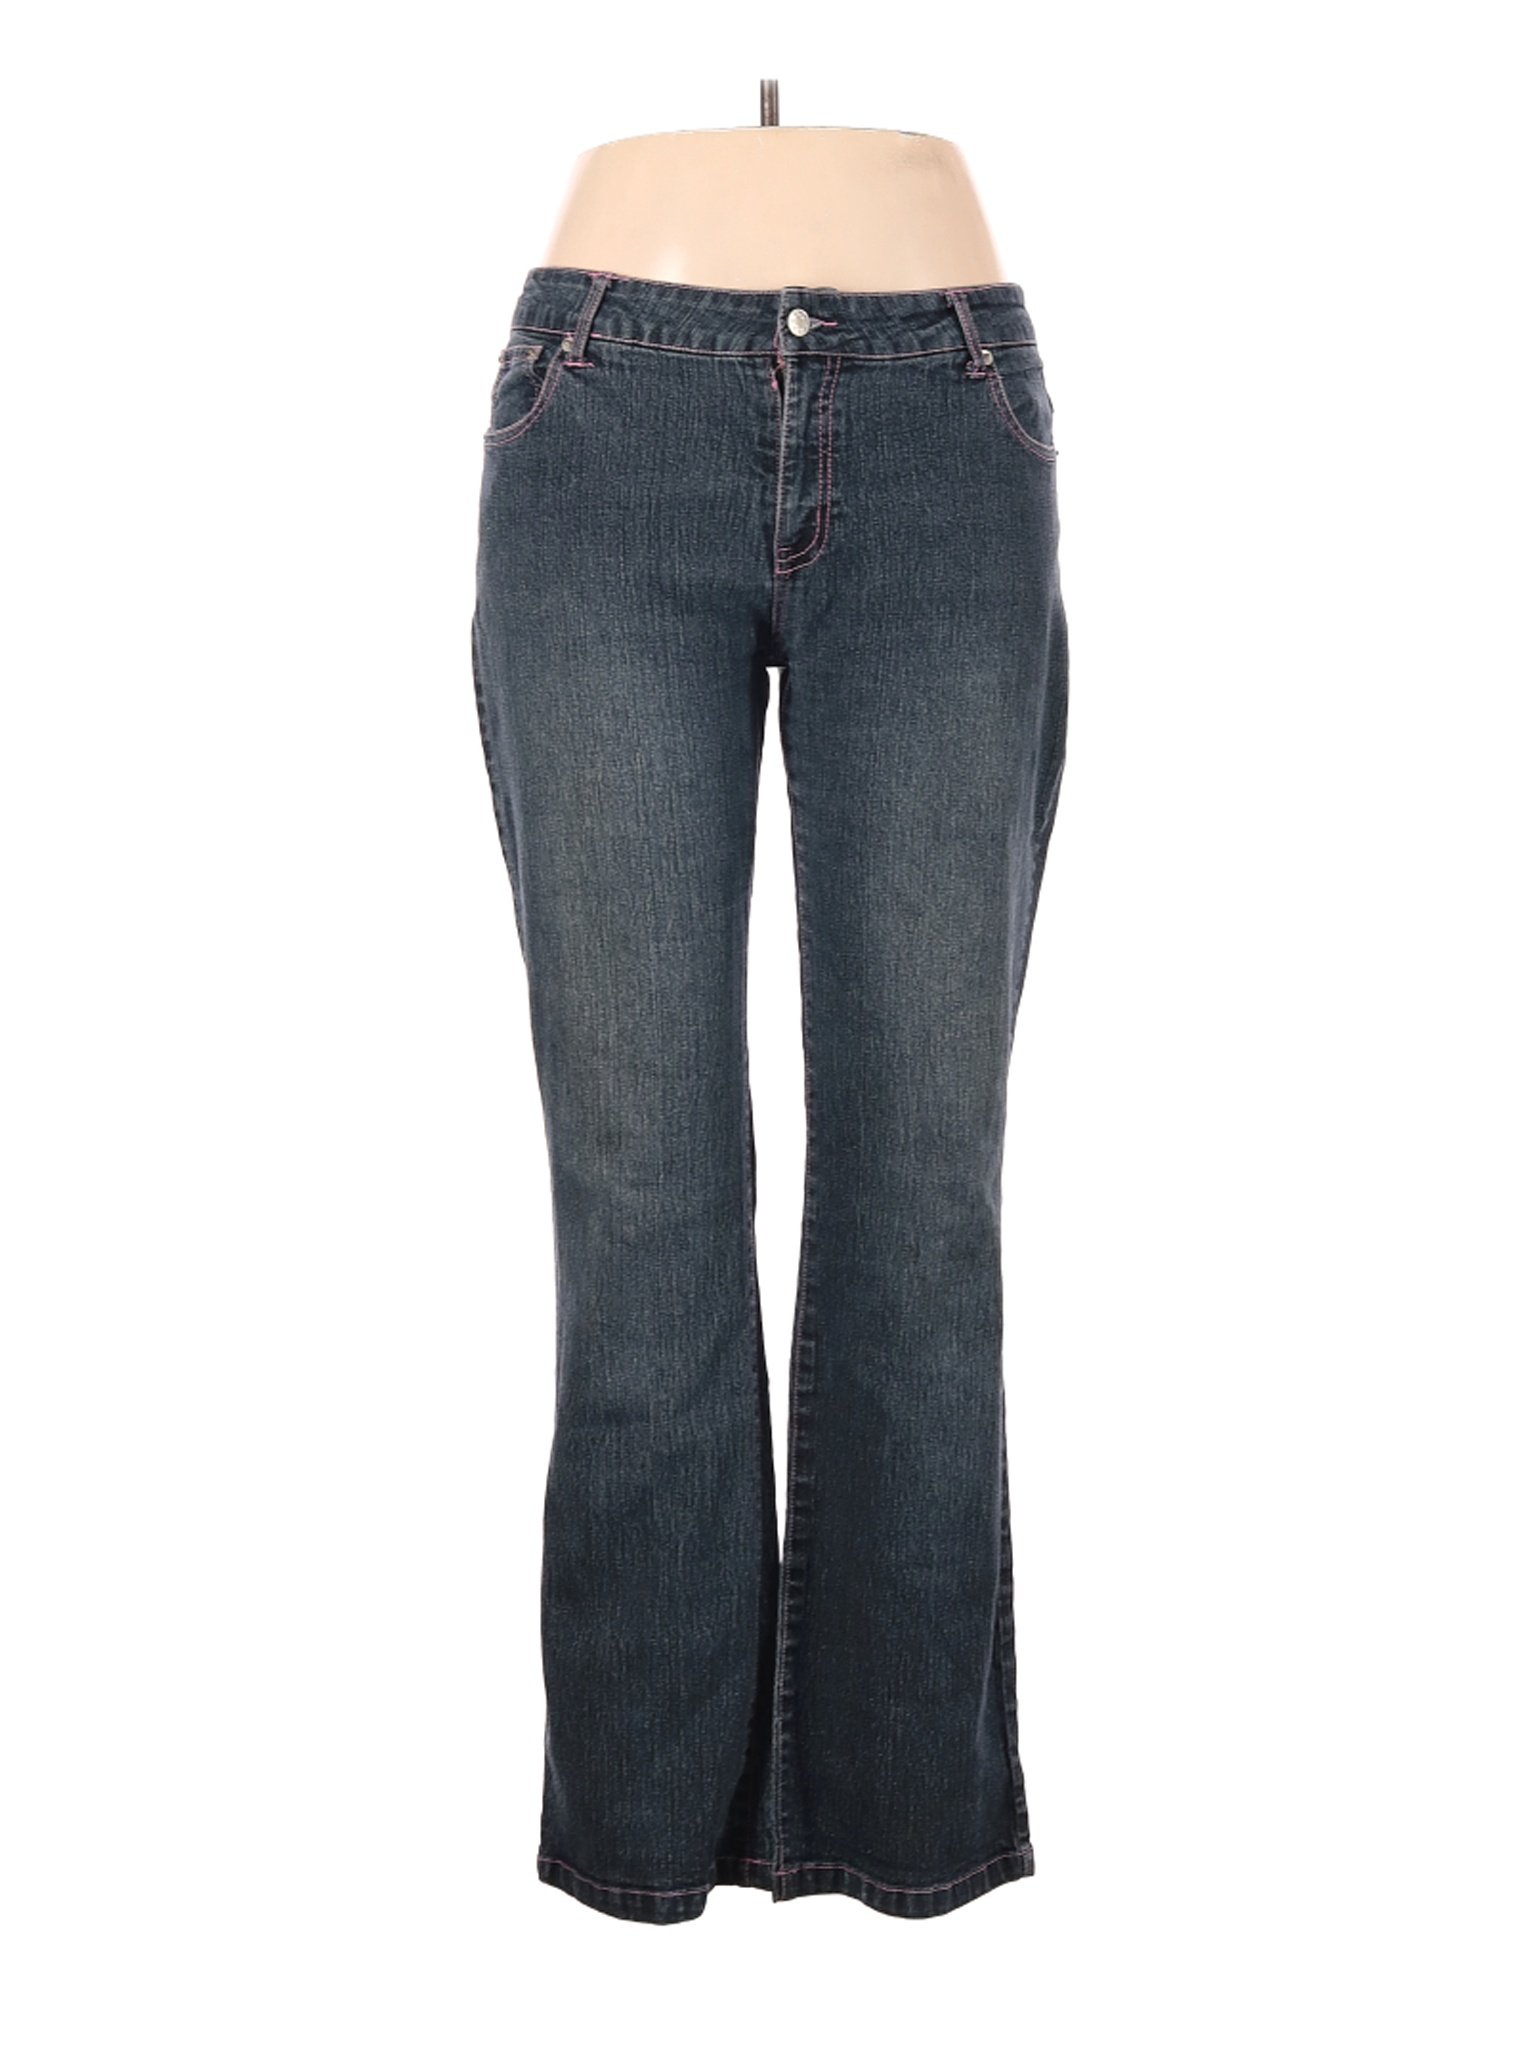 Zoey & Beth Women Blue Jeans 15 | eBay